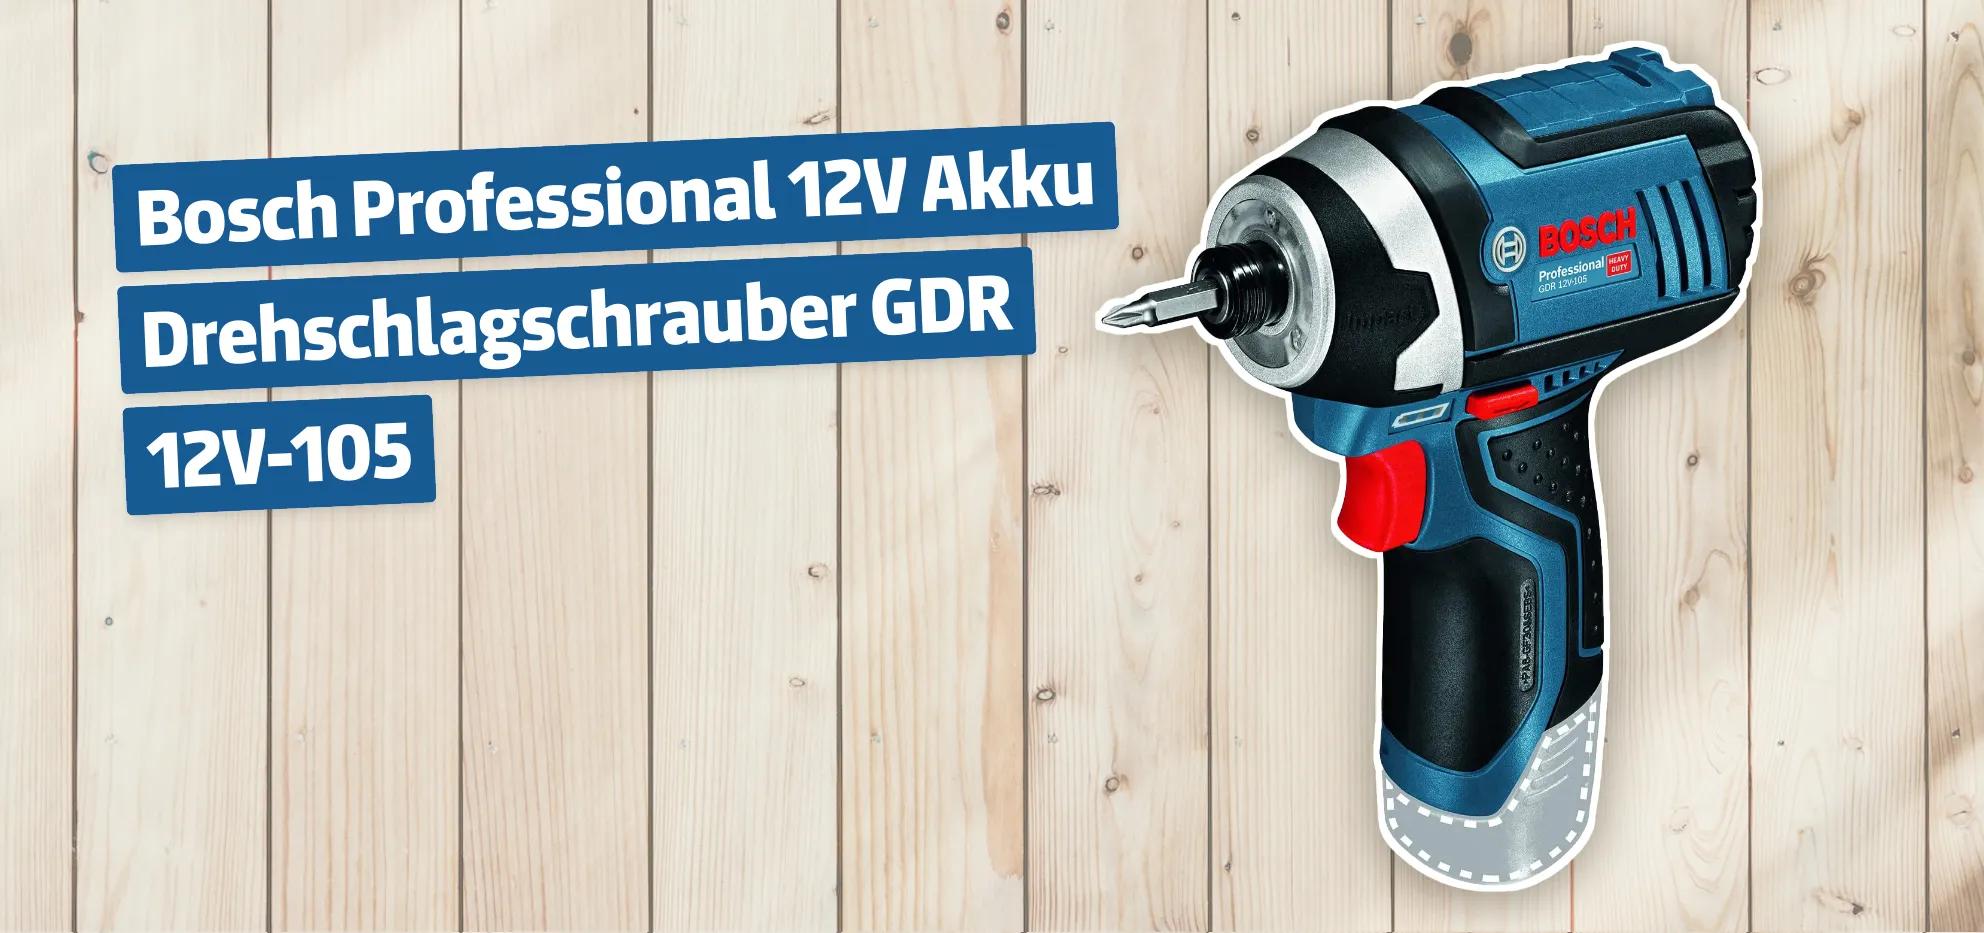 Bosch Professional 12V Akku Drehschlagschrauber GDR 12V-105